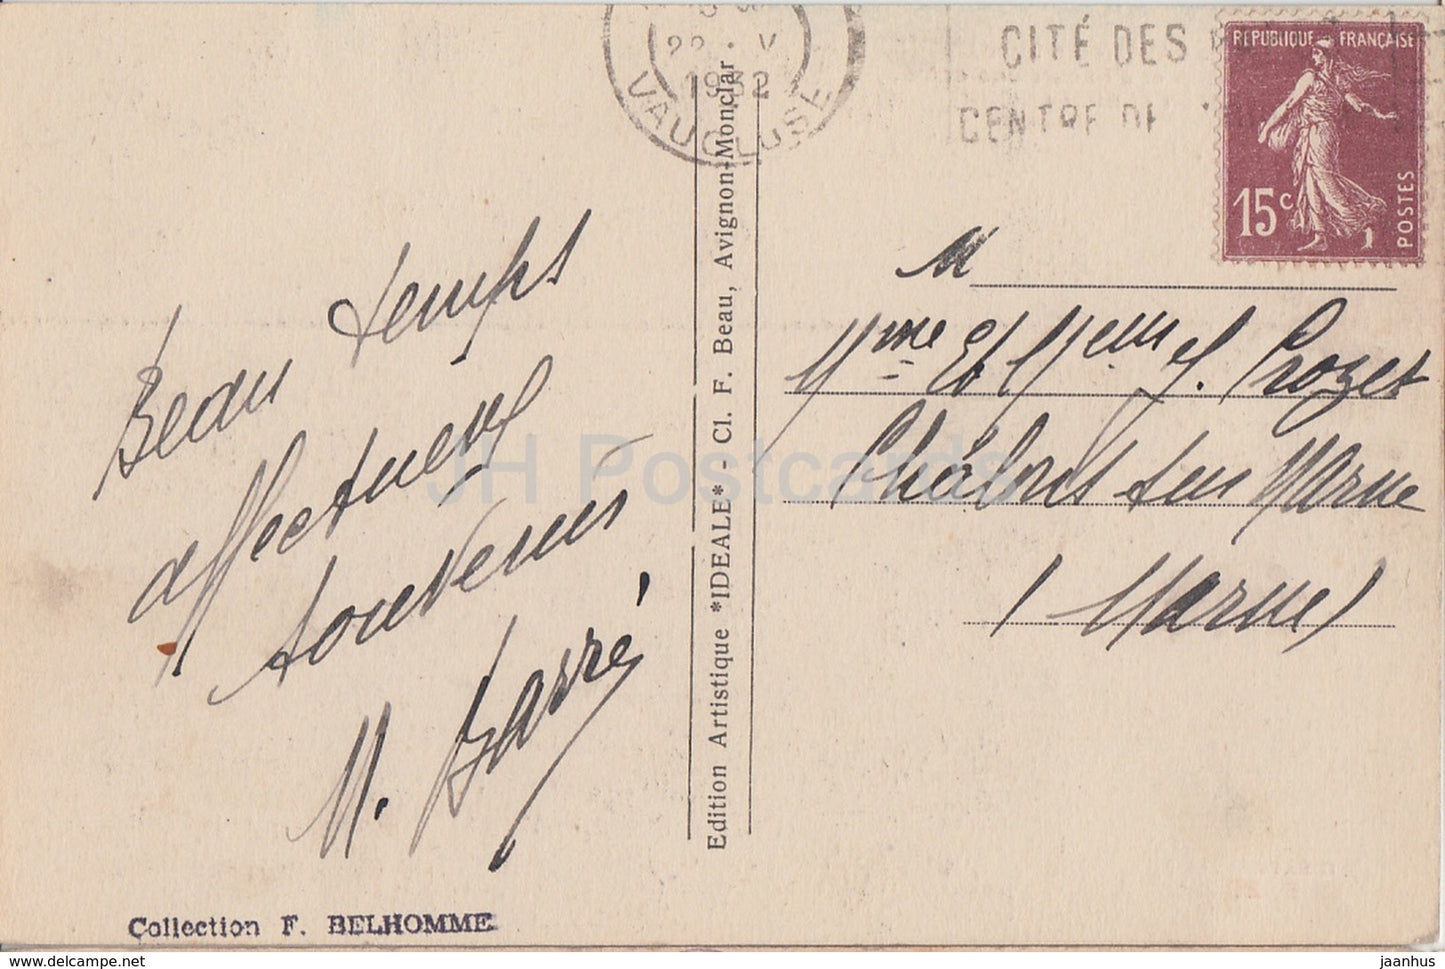 Le Pont du Gard – Côte Nord – Site Pittoresque – Brücke – alte Postkarte – 1932 – Frankreich – gebraucht